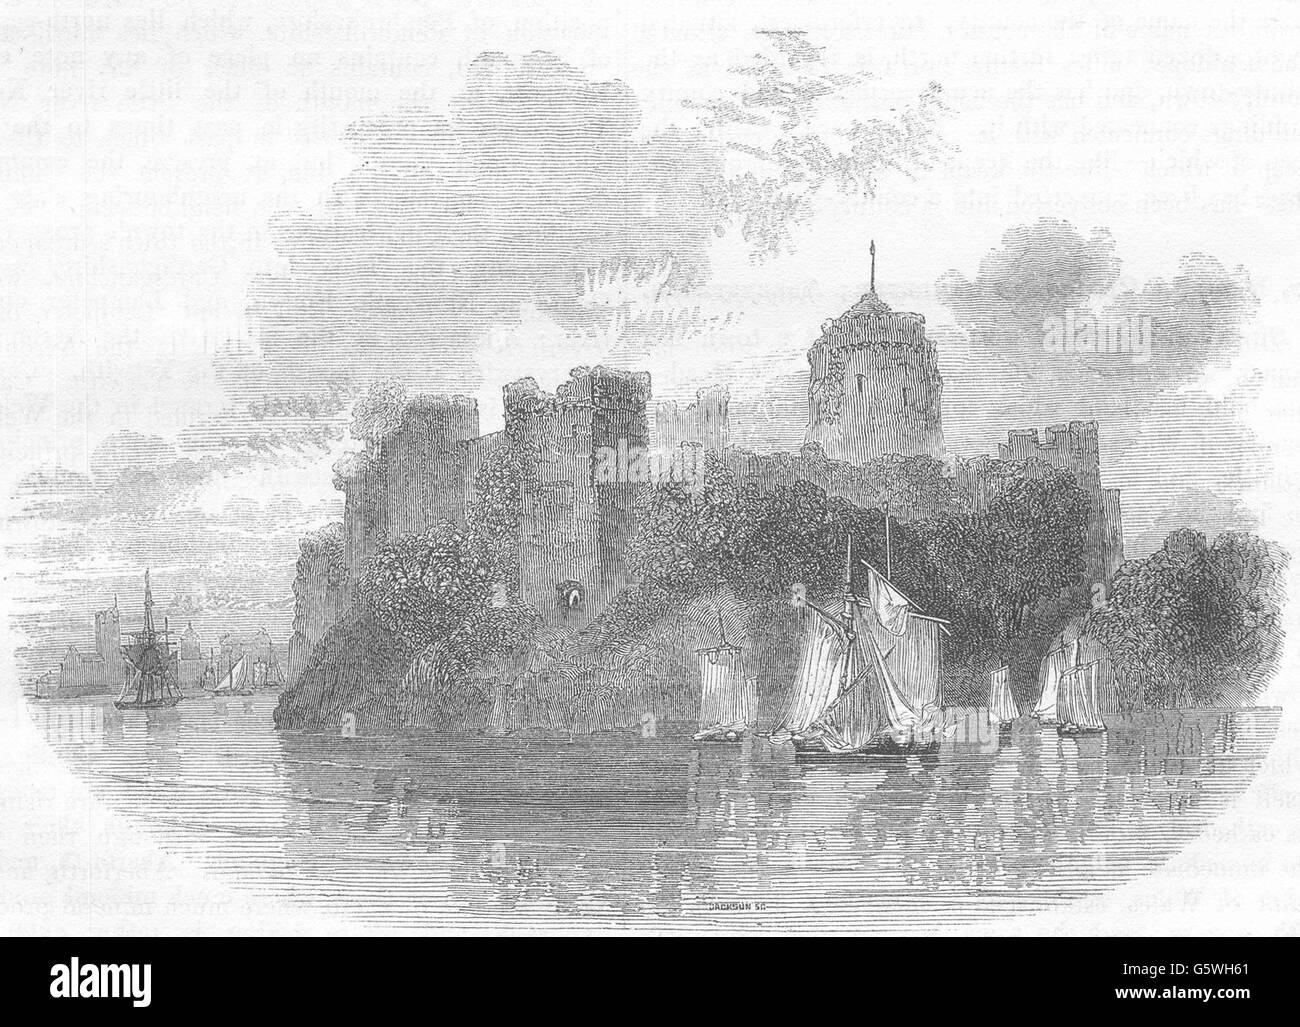 WALES: Pembroke Castle, antique print 1850 Stock Photo